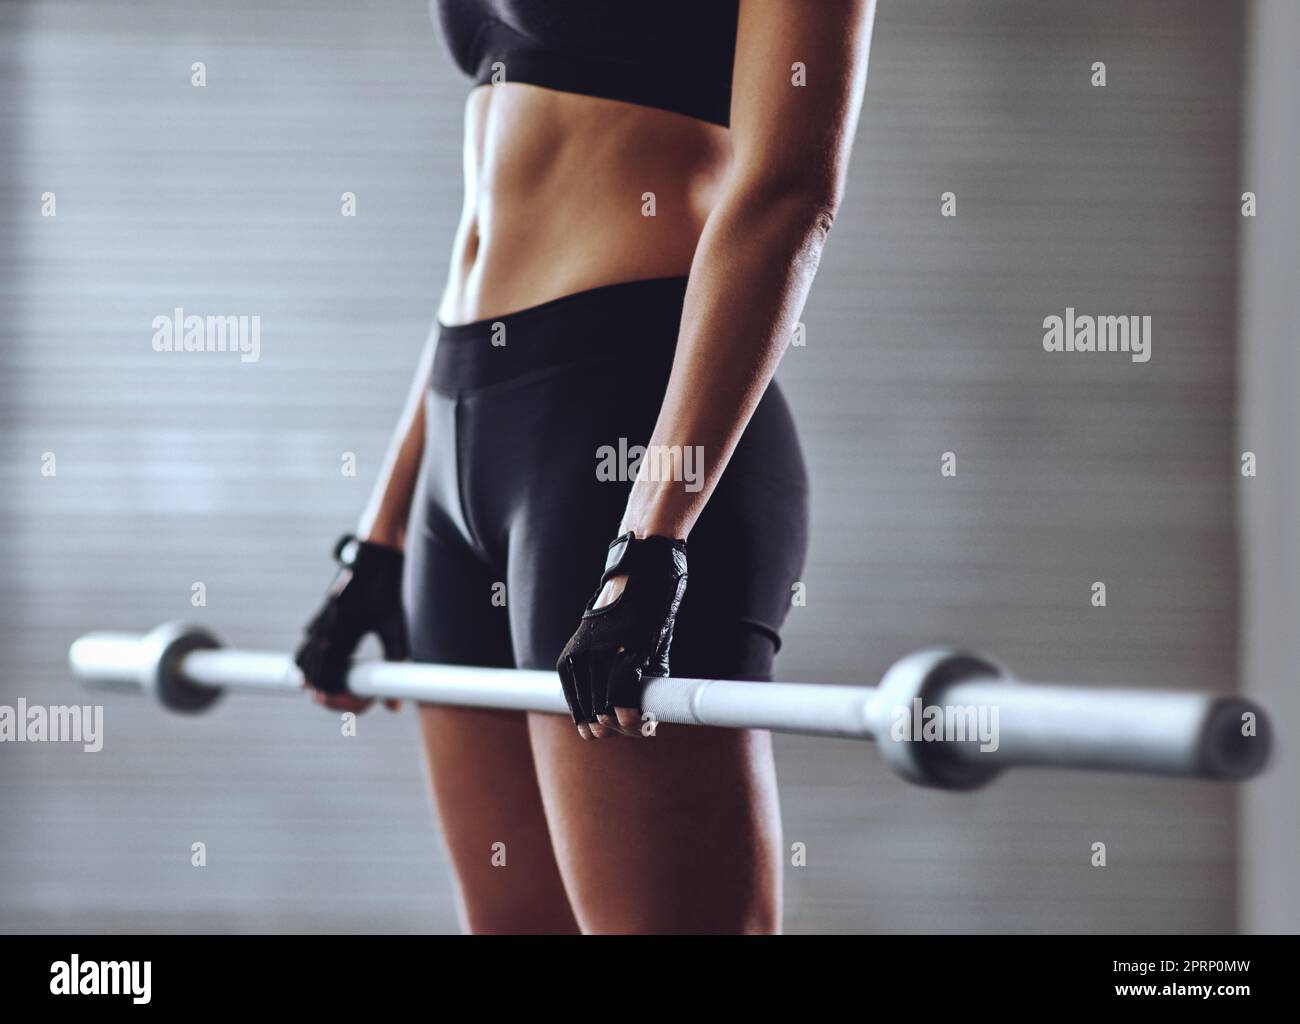 Des entraînements solides créent des corps solides. Une femme s'entraîne avec des poids à la salle de gym. Banque D'Images